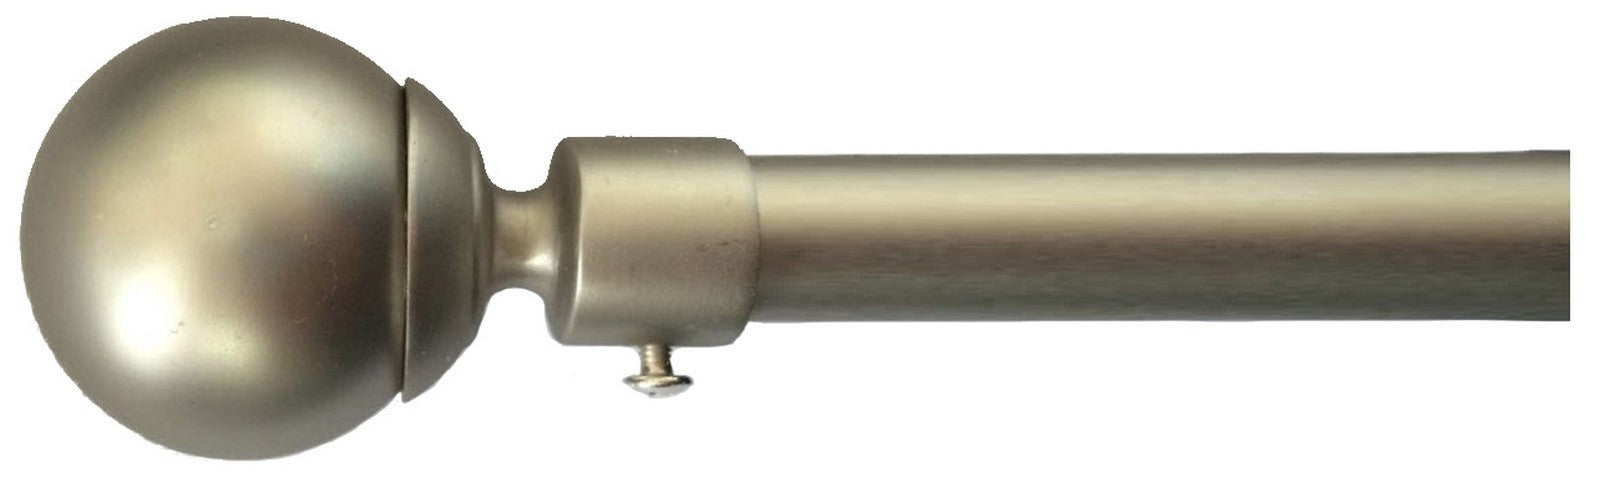 4pz bastone a strappo d 19 mm cromo satinato 170-300 sfera cod:ferx.56476